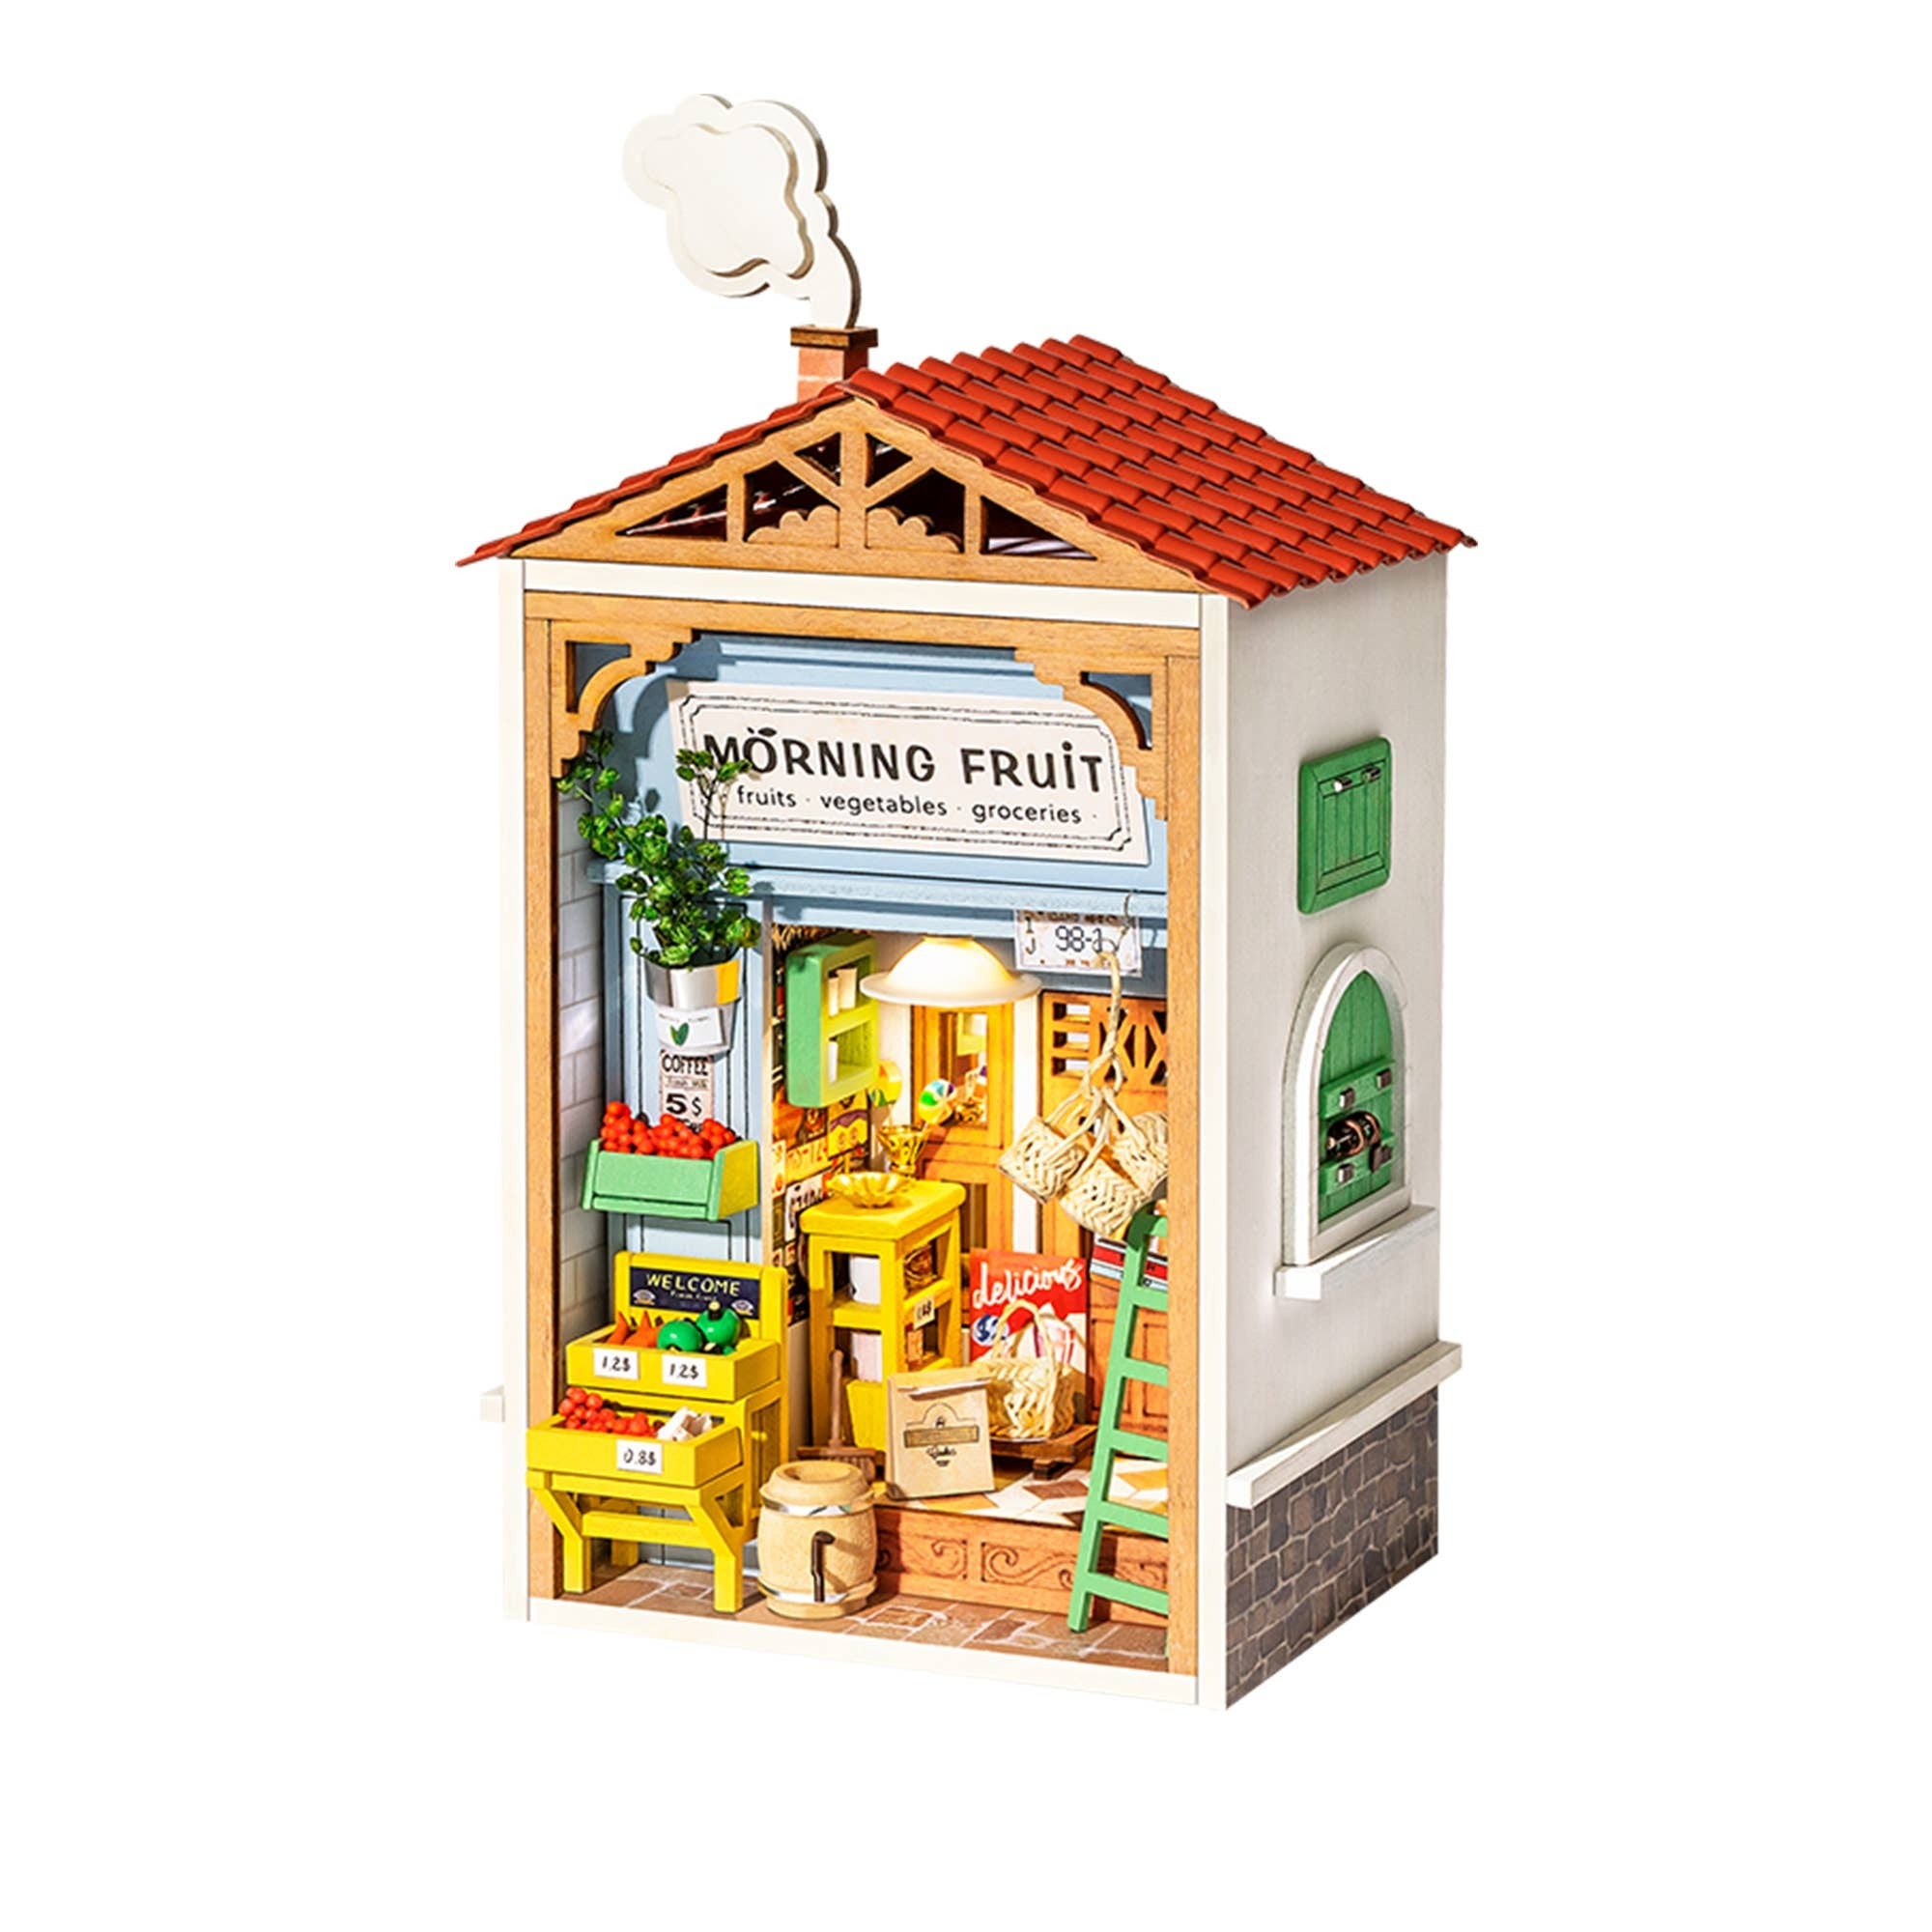 DS009, Kit maison miniature bricolage : magasin de fruits du matin